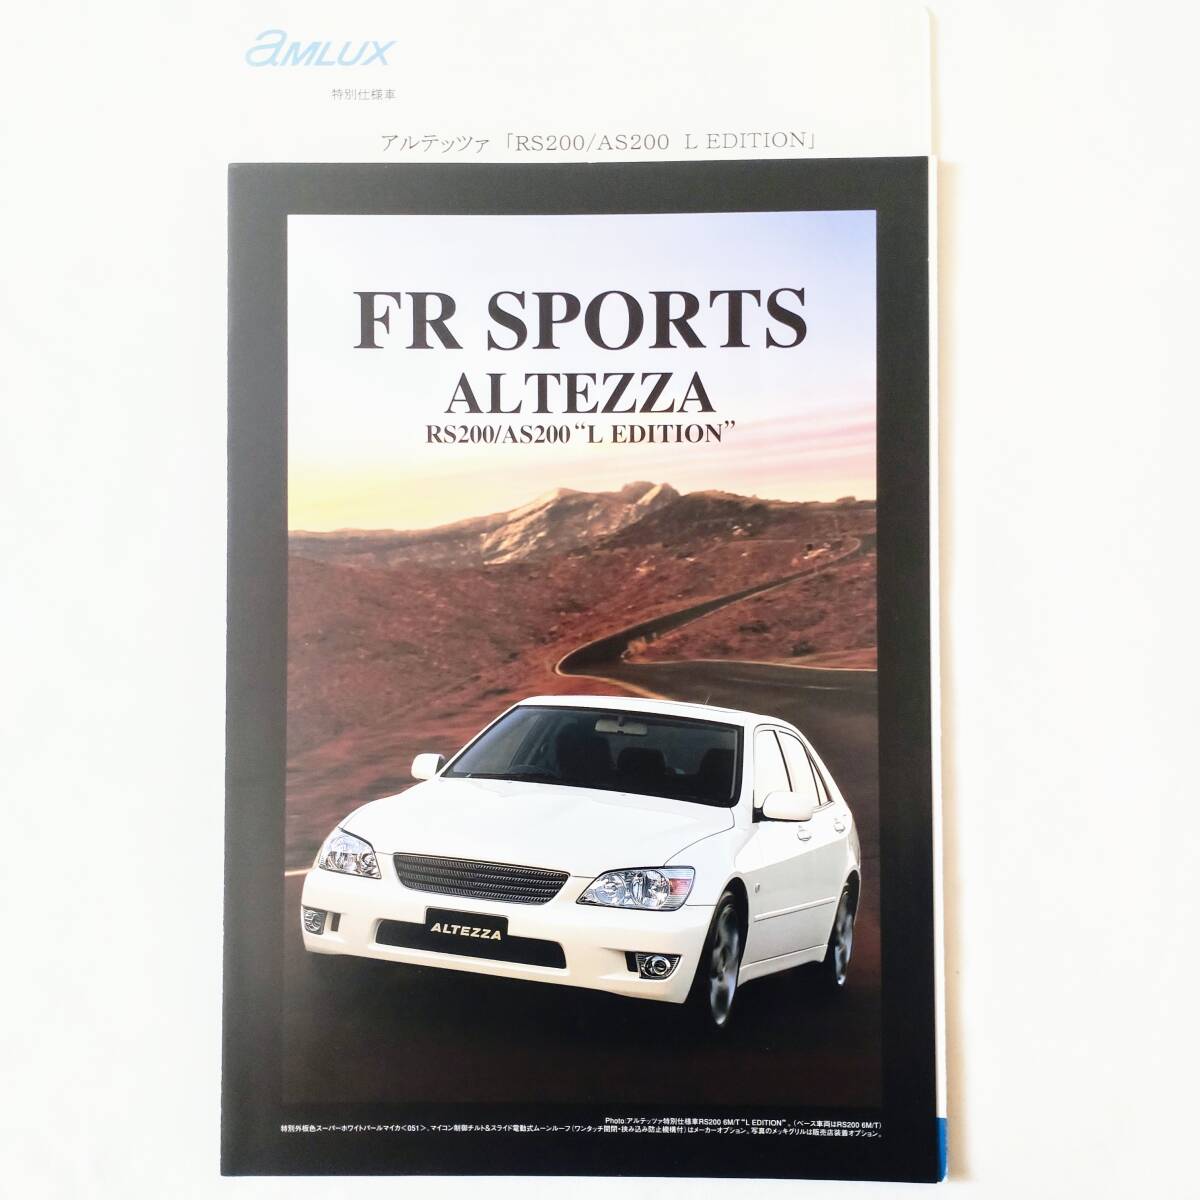 1999年5月発行 トヨタ アルテッツァ 特別仕様 L エディション L EDITION RS200 AS200 カタログ 価格表付_画像1